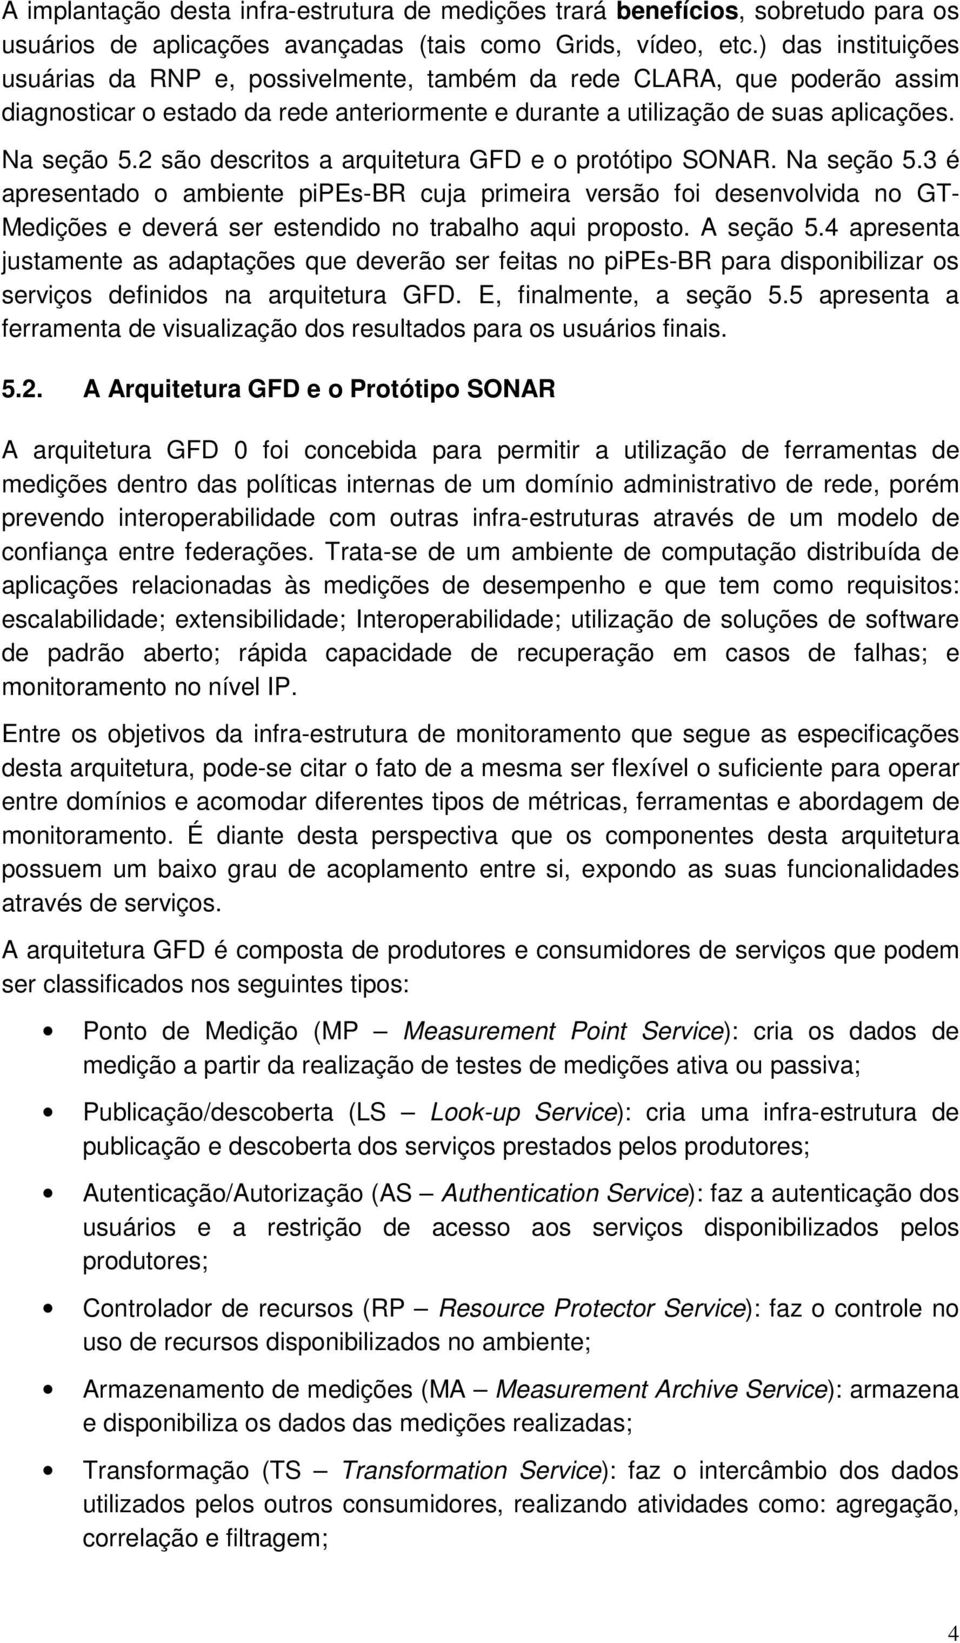 2 são descritos a arquitetura GFD e o protótipo SONAR. Na seção 5.